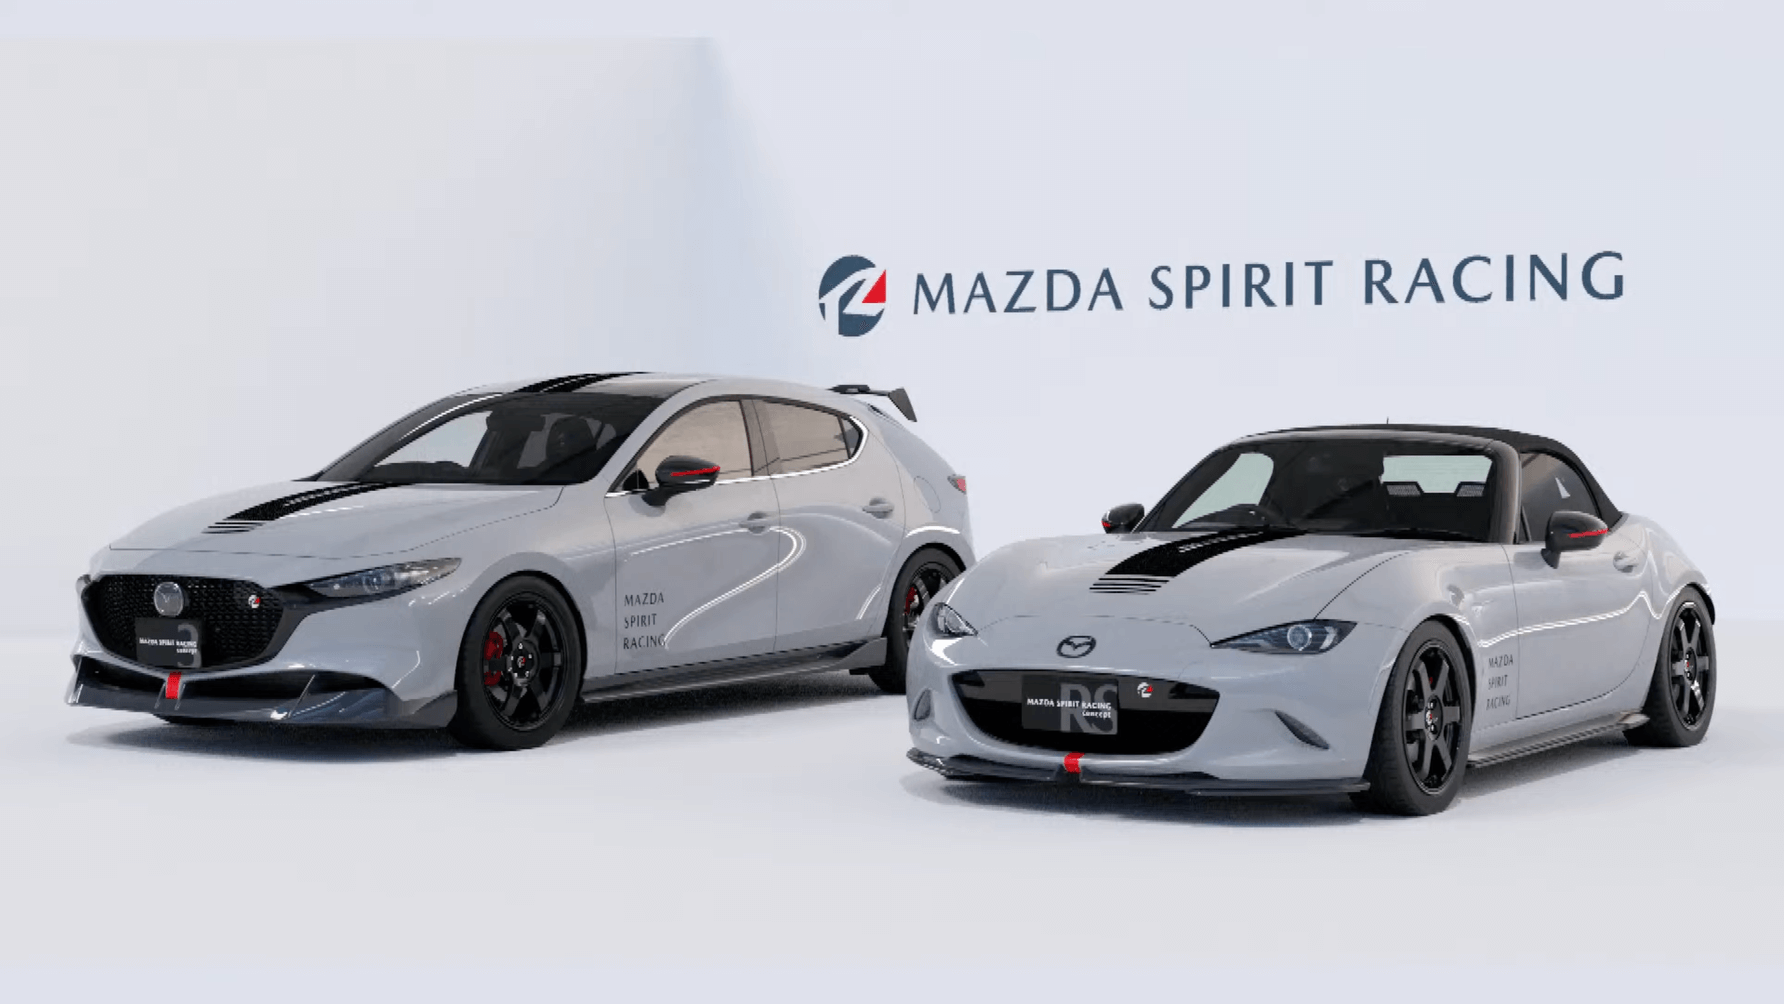 Суббренд Mazda Spirit Racing запускается с более гоночными MX-5 и Mazda 3